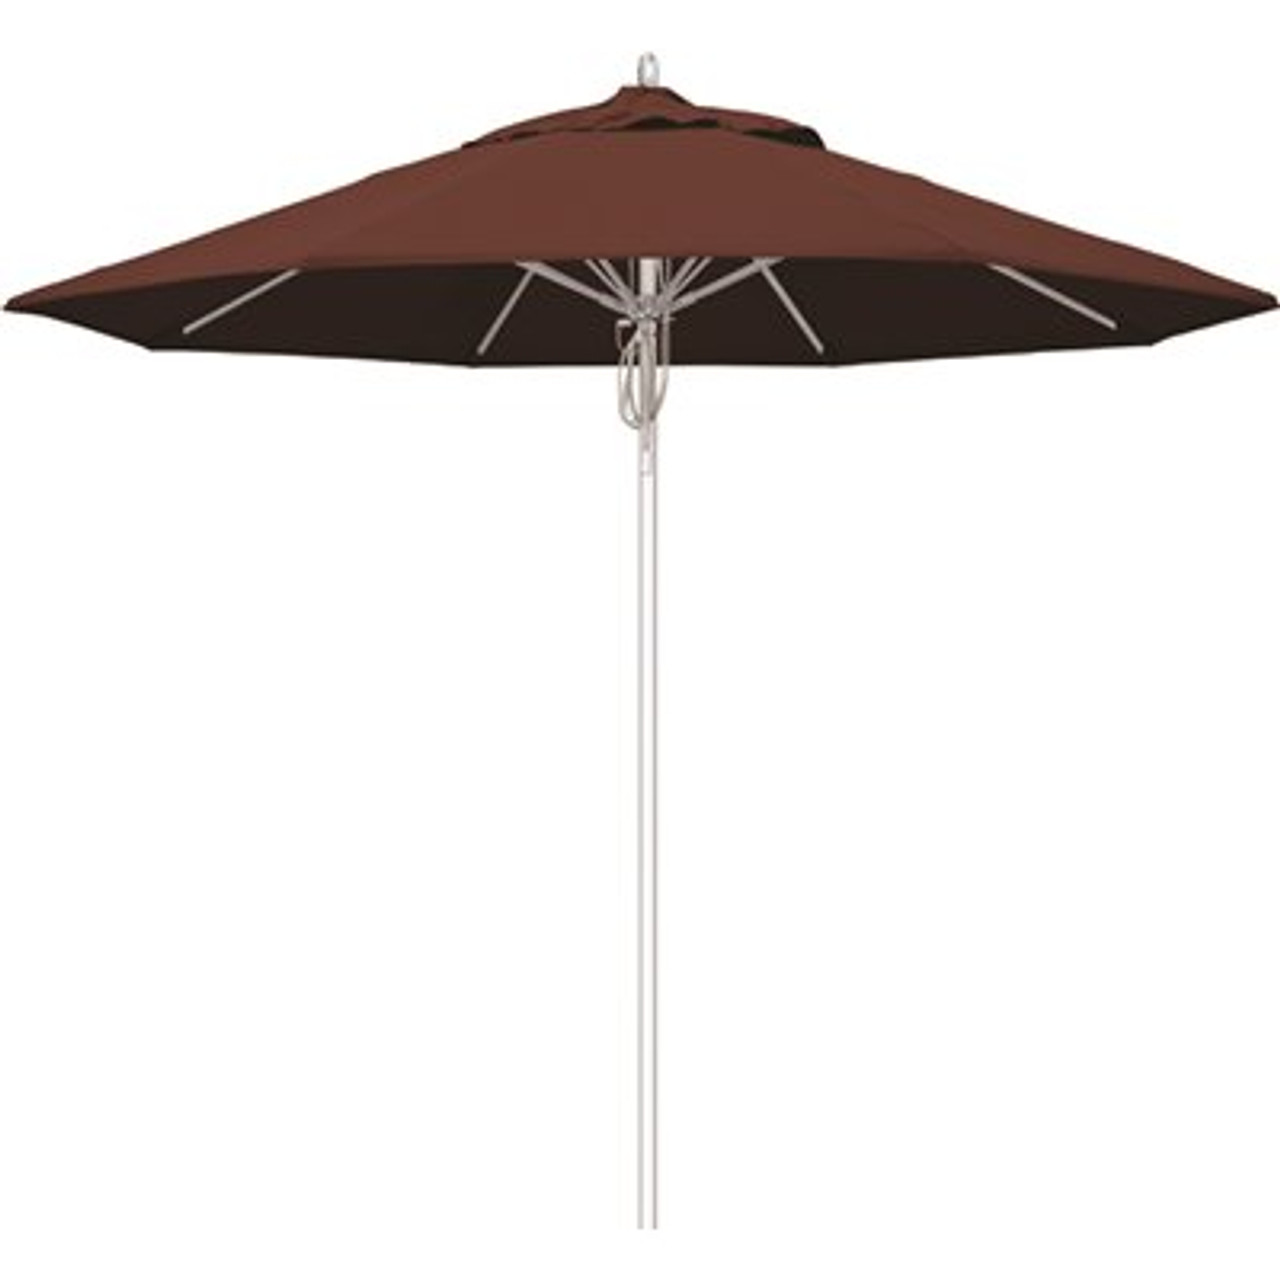 California Umbrella 9 ft. Silver Aluminum Commercial Fiberglass Ribs Market Patio Umbrella and Pulley Lift in Henna Sunbrella